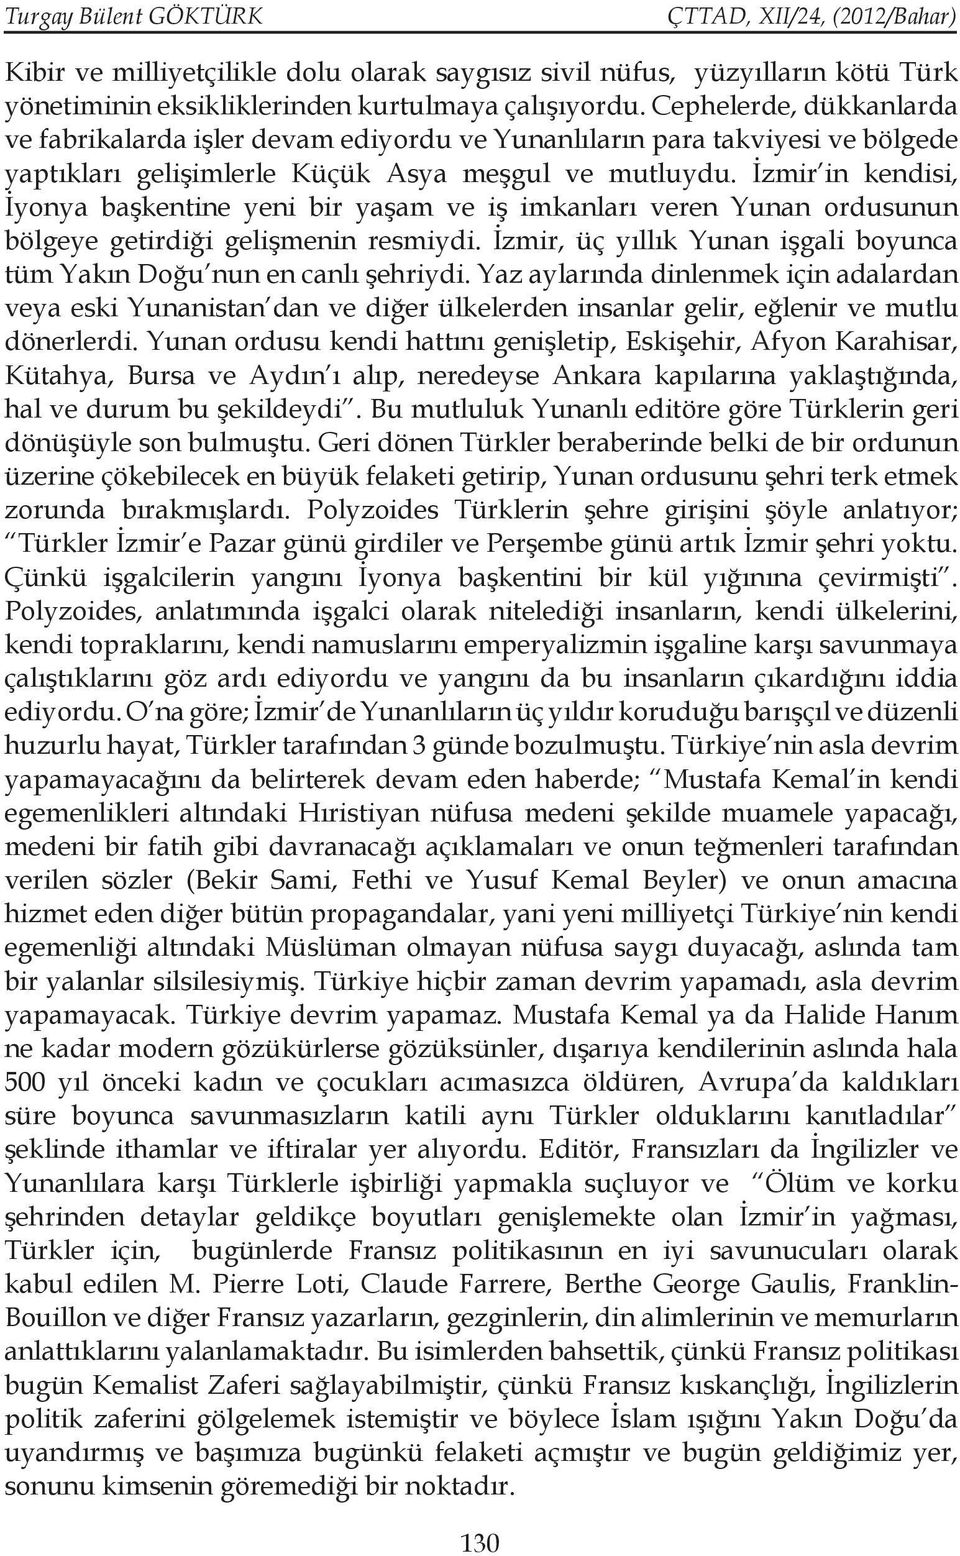 İzmir in kendisi, İyonya başkentine yeni bir yaşam ve iş imkanları veren Yunan ordusunun bölgeye getirdiği gelişmenin resmiydi.